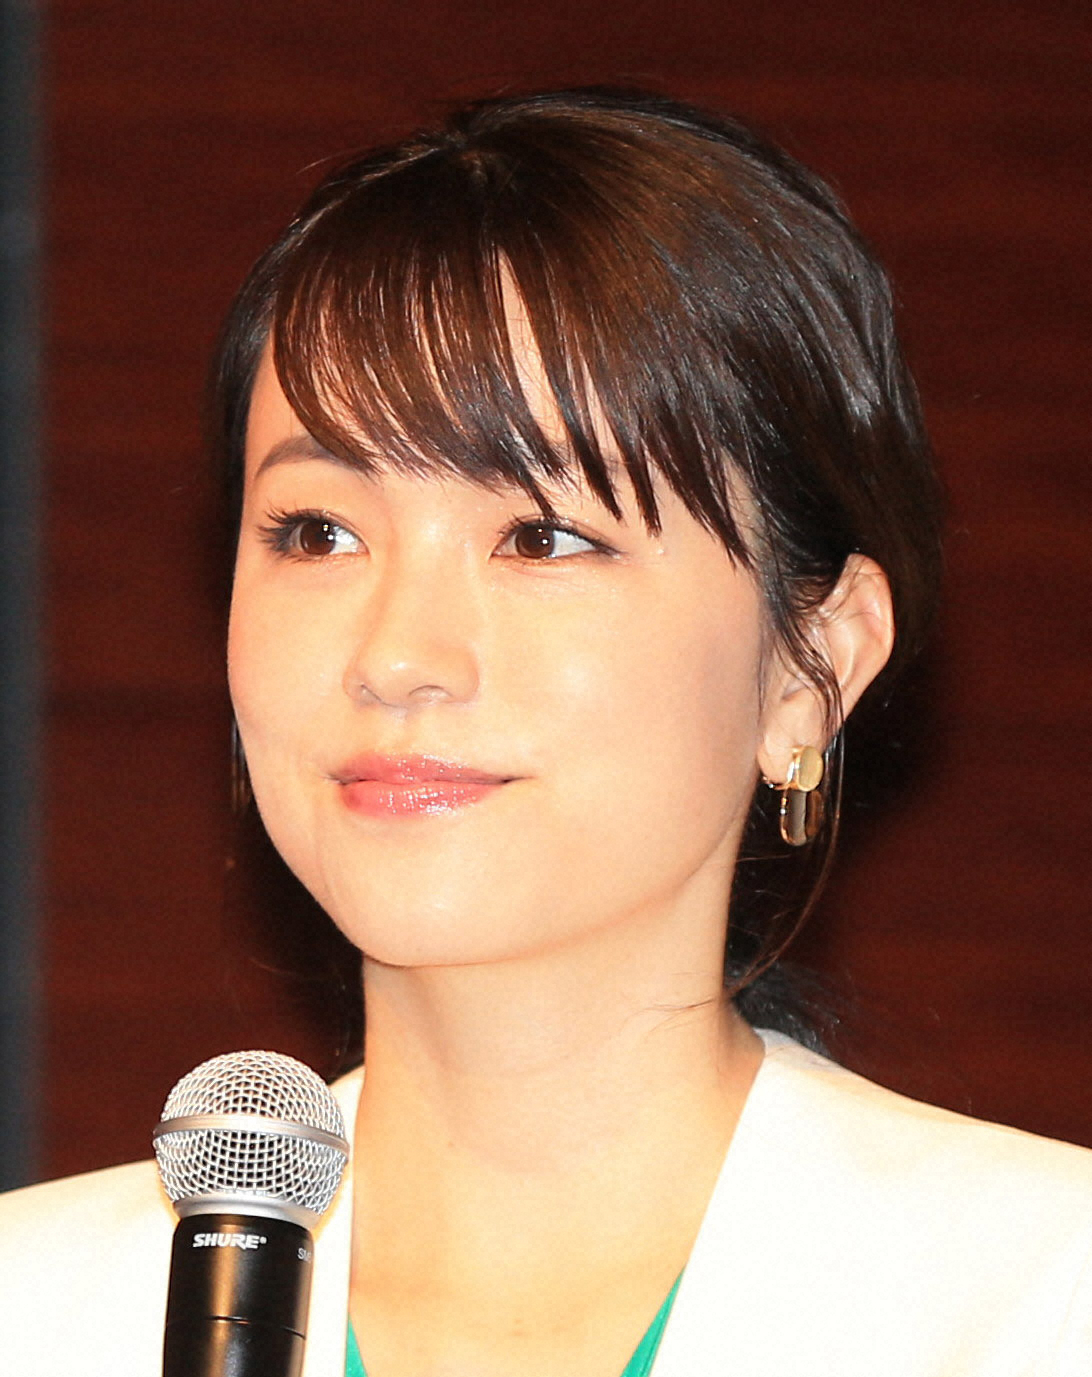 本田朋子アナ　ヘアカラー「アッシュ系」チェンジに「めっちゃ似合ってます」「お似合いです」